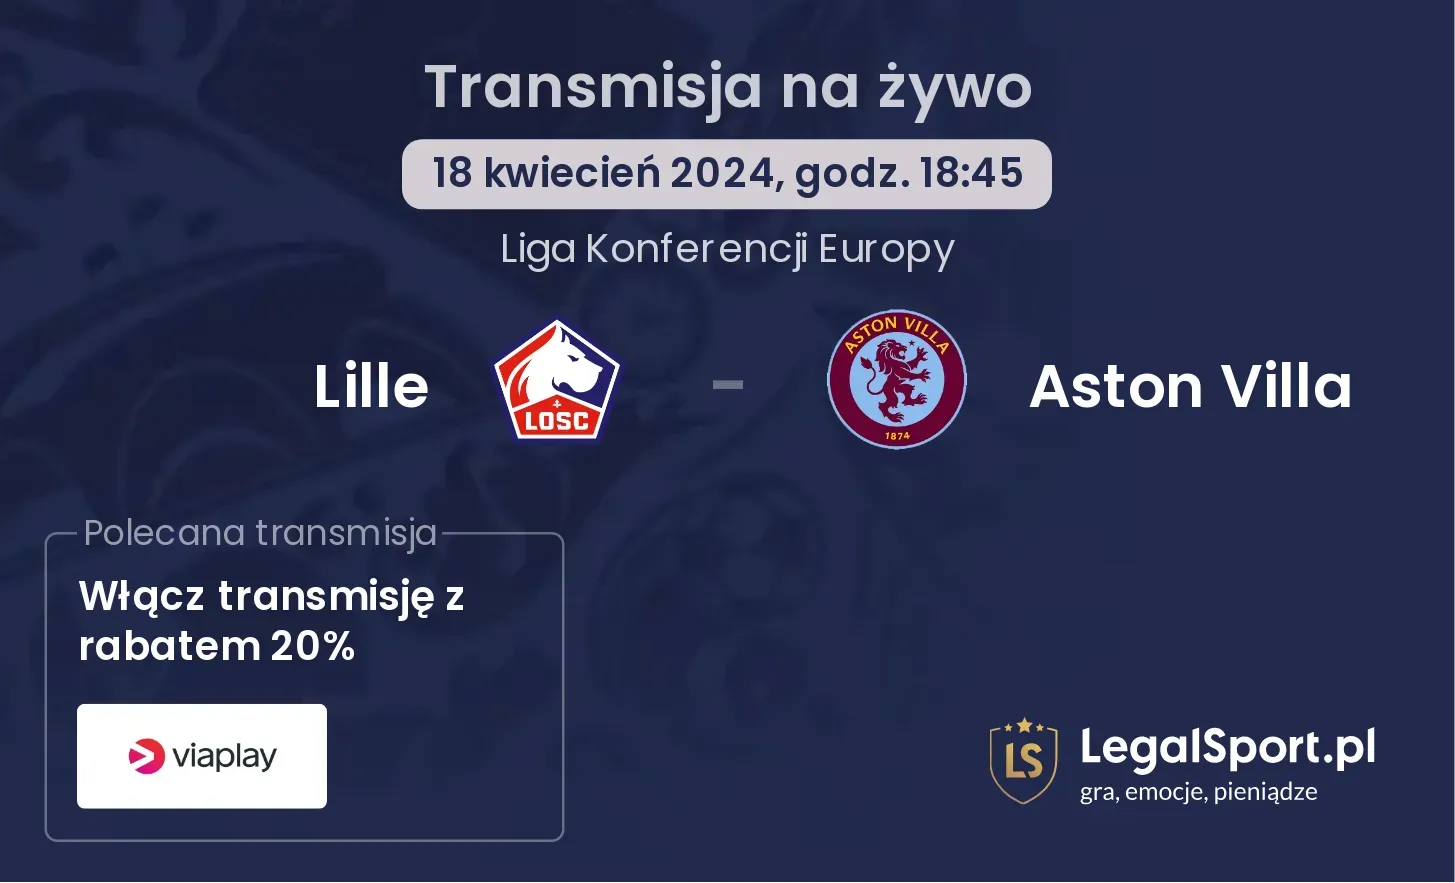 Lille - Aston Villa transmisja na żywo